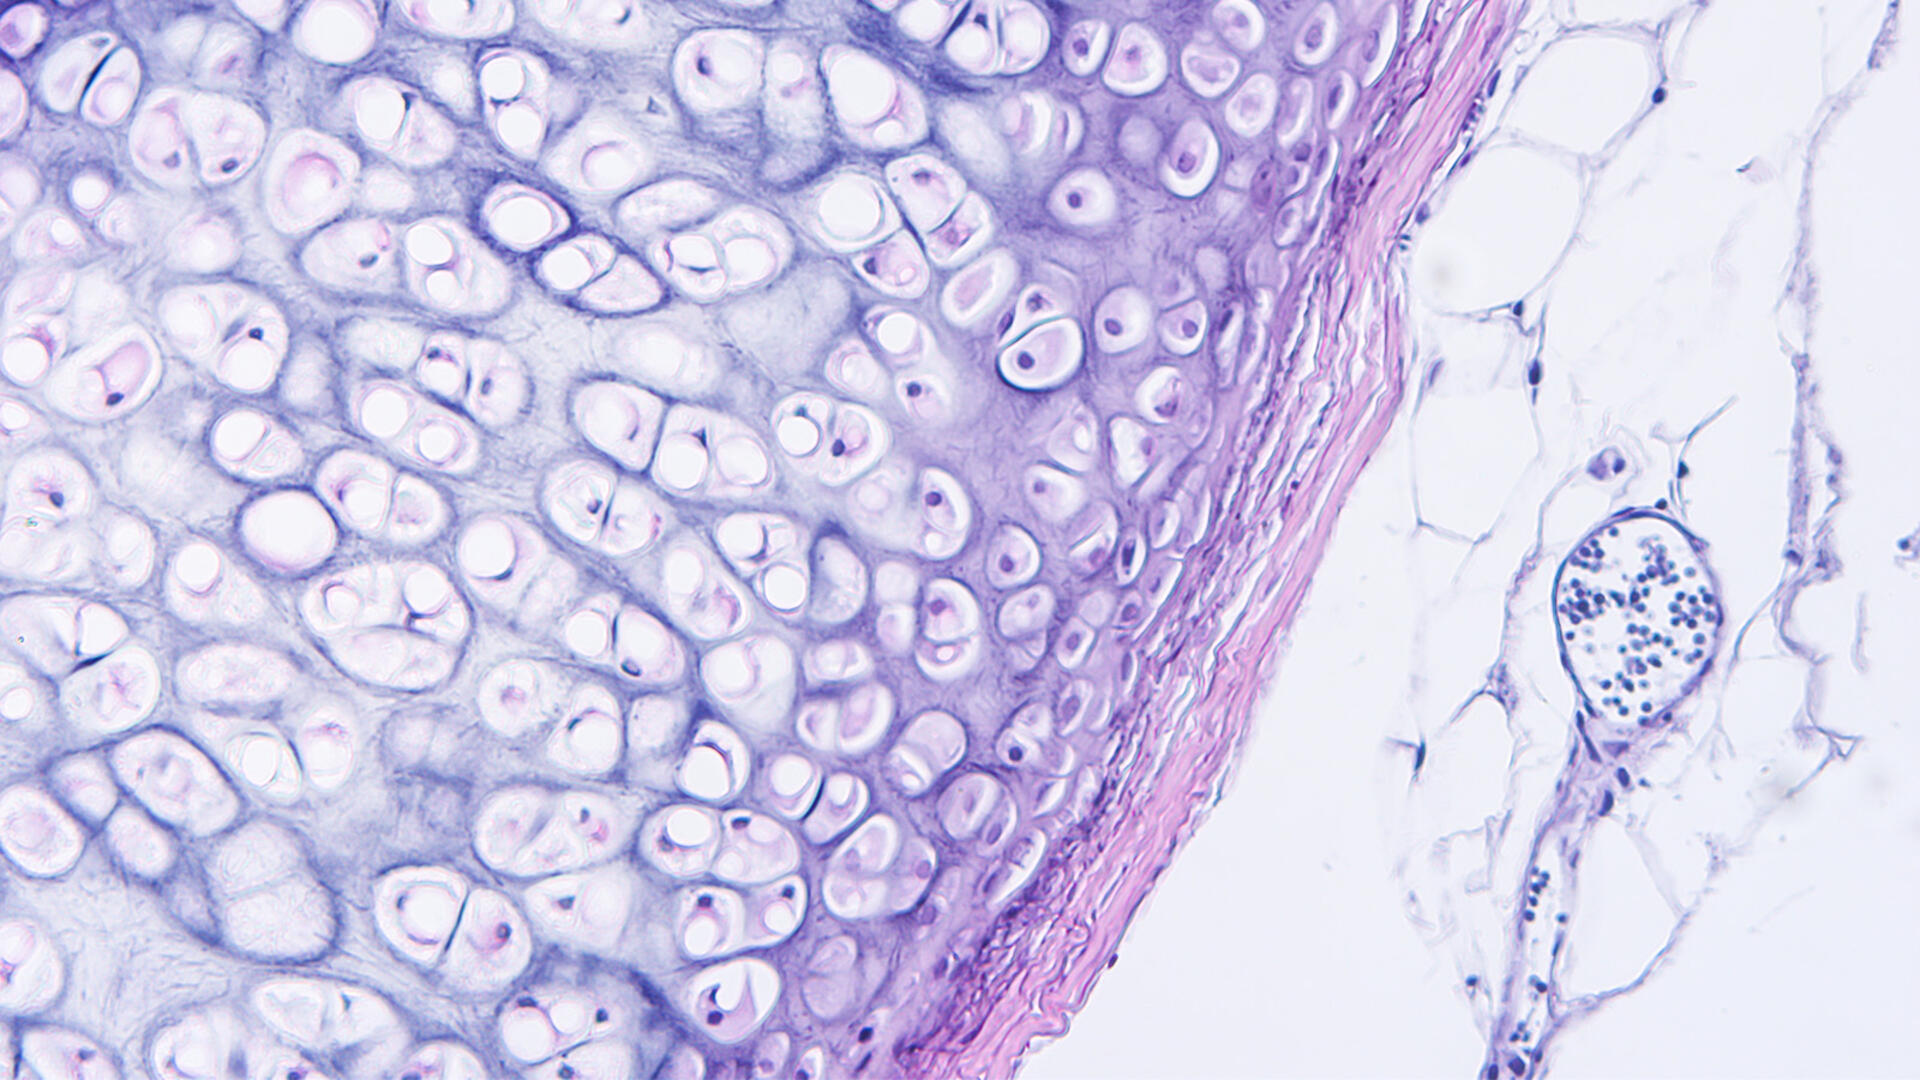 Vue microscopique de tissus humains. 